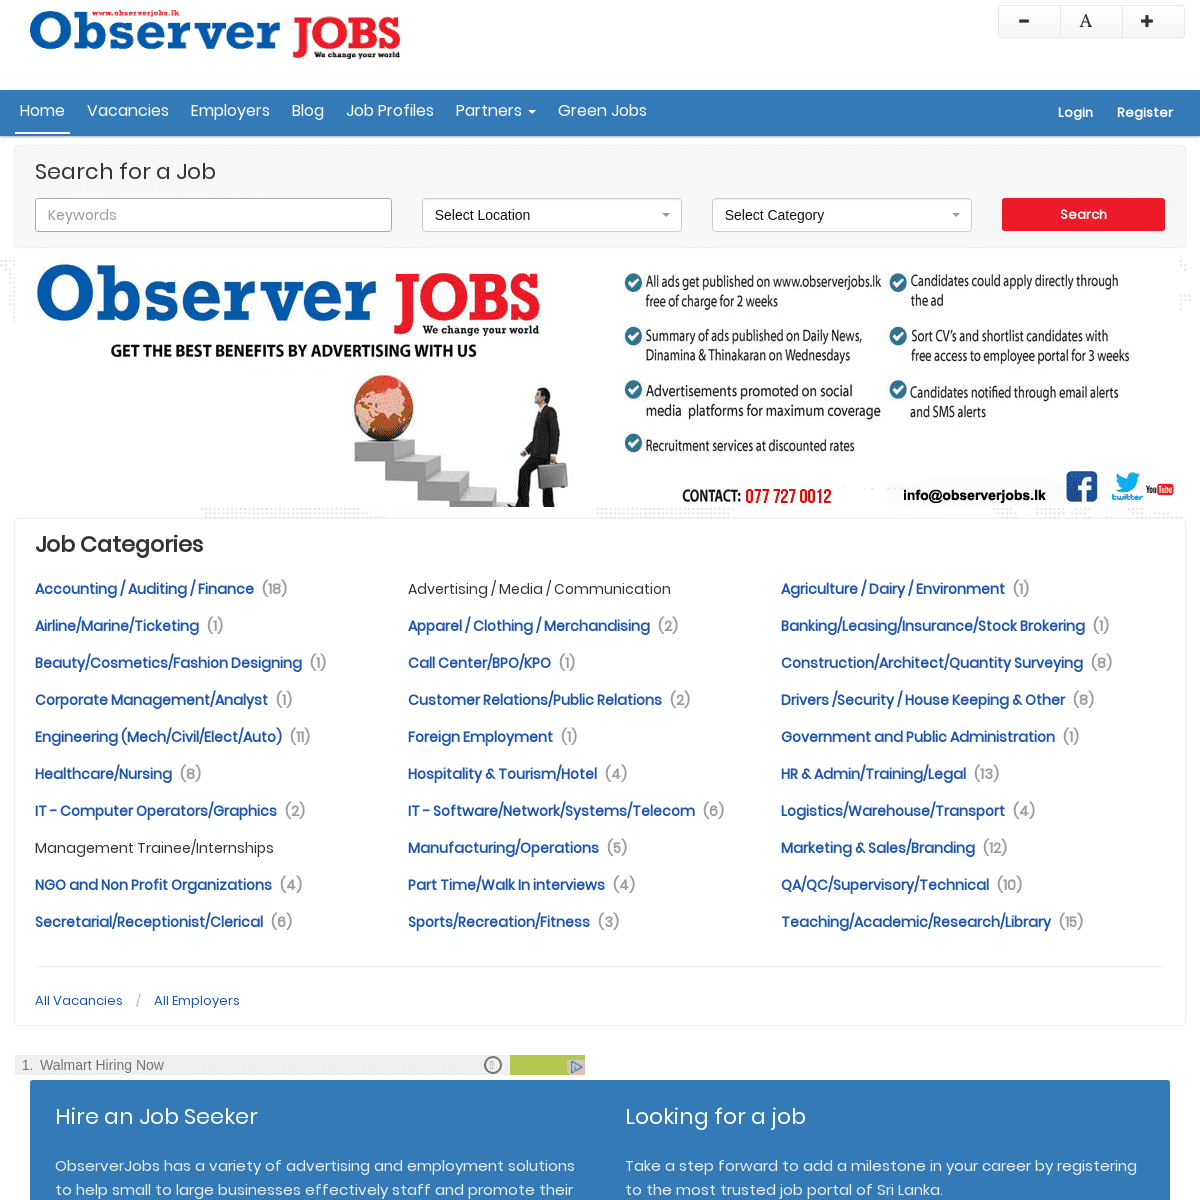 A complete backup of observerjobs.lk